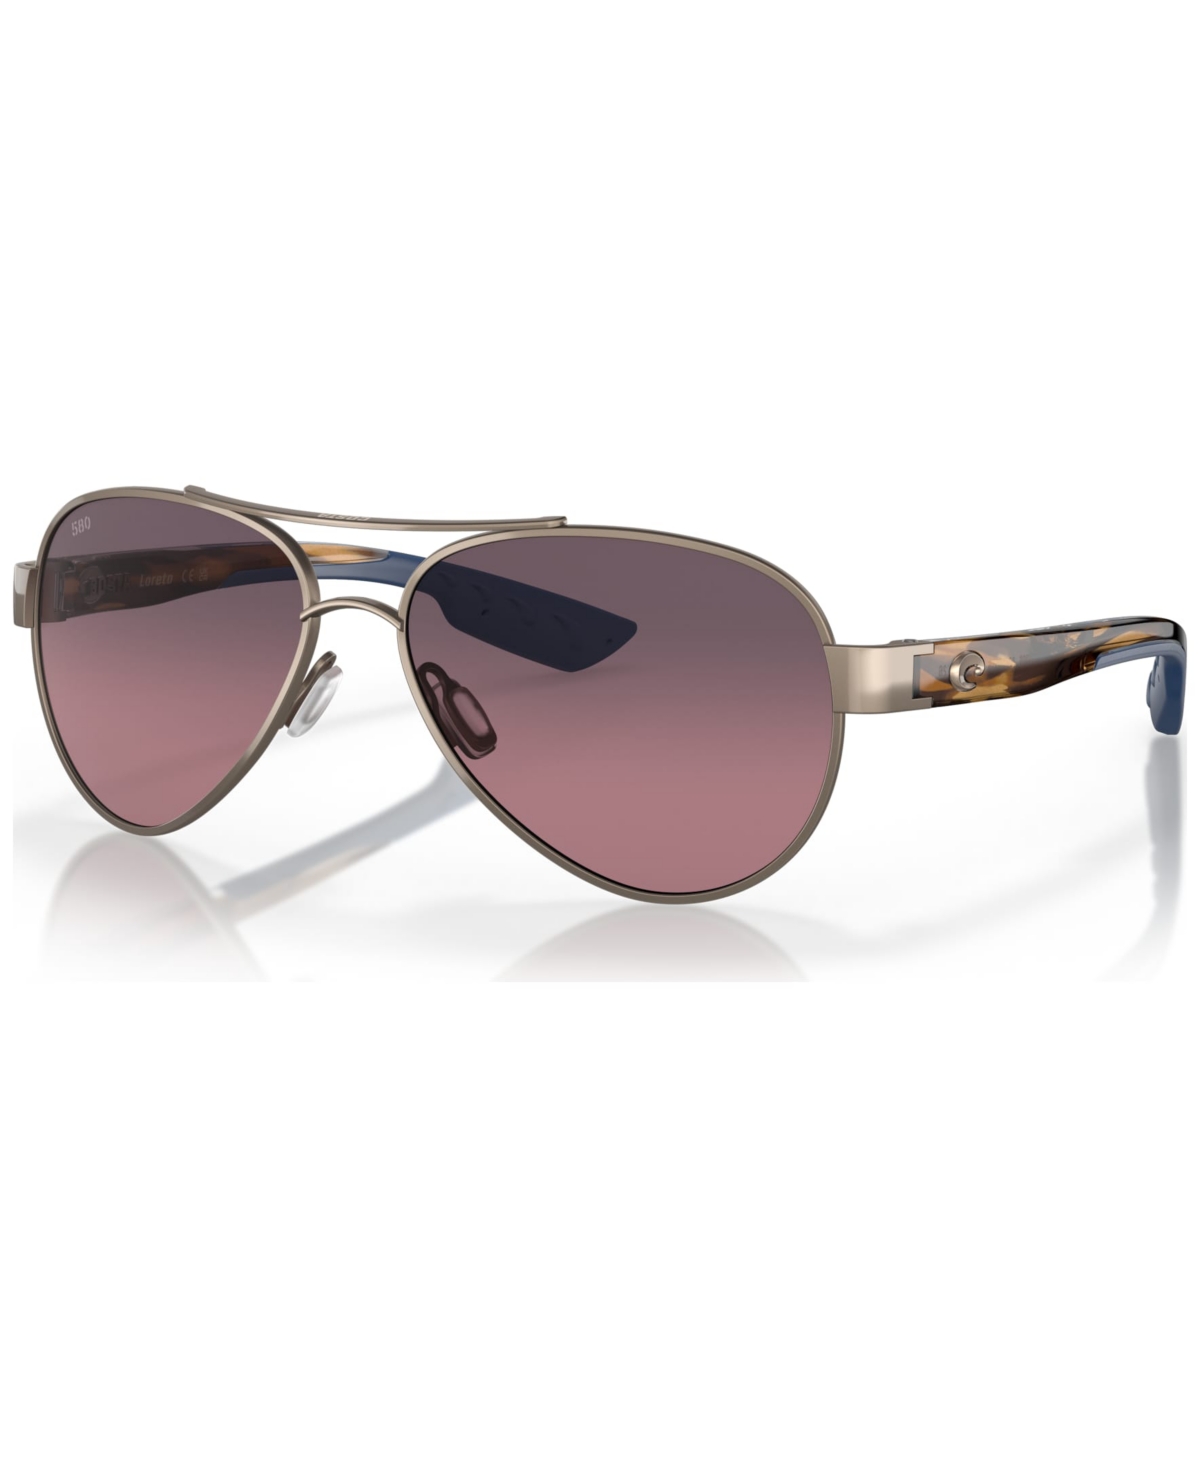 Women's Polarized Sunglasses, Loreto - Golden-Tone Pearl